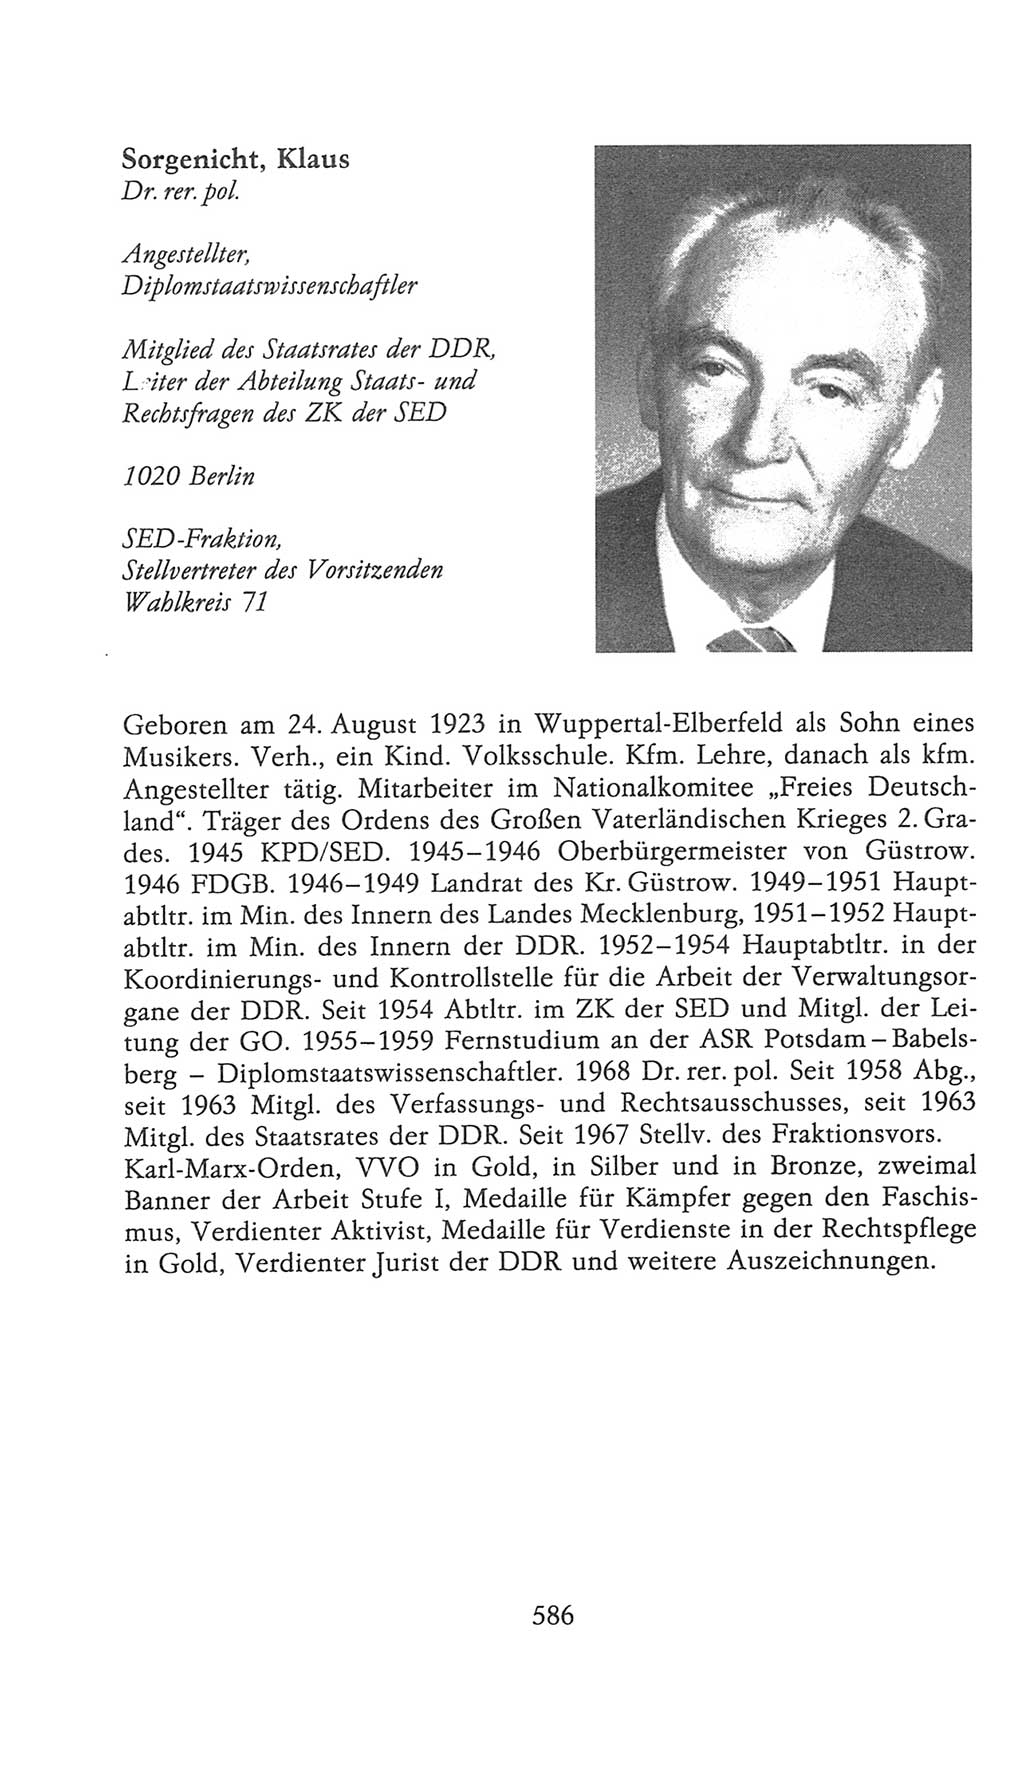 Volkskammer (VK) der Deutschen Demokratischen Republik (DDR), 9. Wahlperiode 1986-1990, Seite 586 (VK. DDR 9. WP. 1986-1990, S. 586)